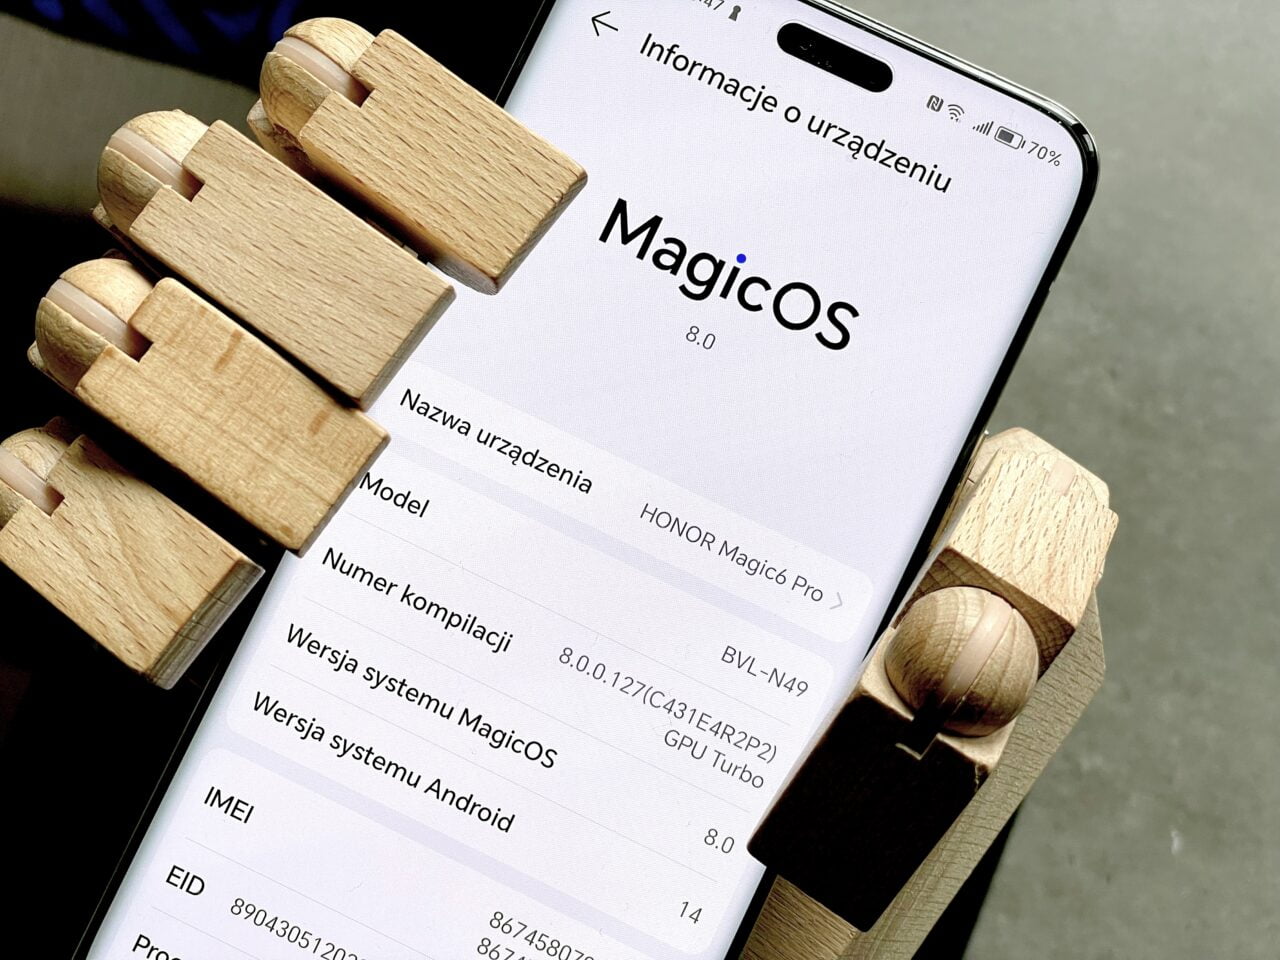 Ekran smartfona pokazujący informacje o urządzeniu z systemem MagicOS 8.0, aktualizacja, nowa wersja